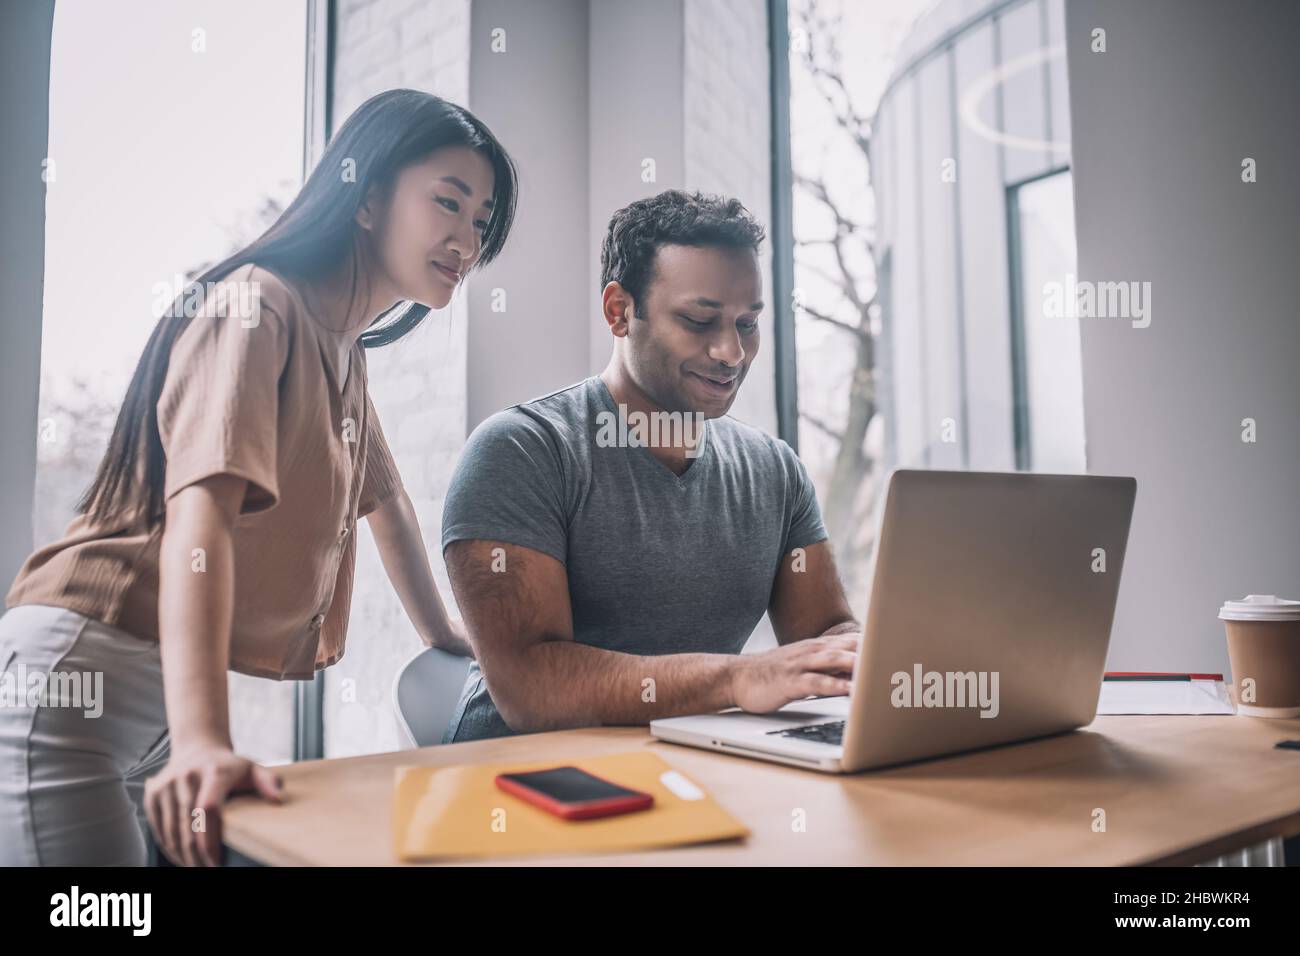 Un gars à la peau sombre à l'ordinateur portable et à regarder une fille asiatique Banque D'Images